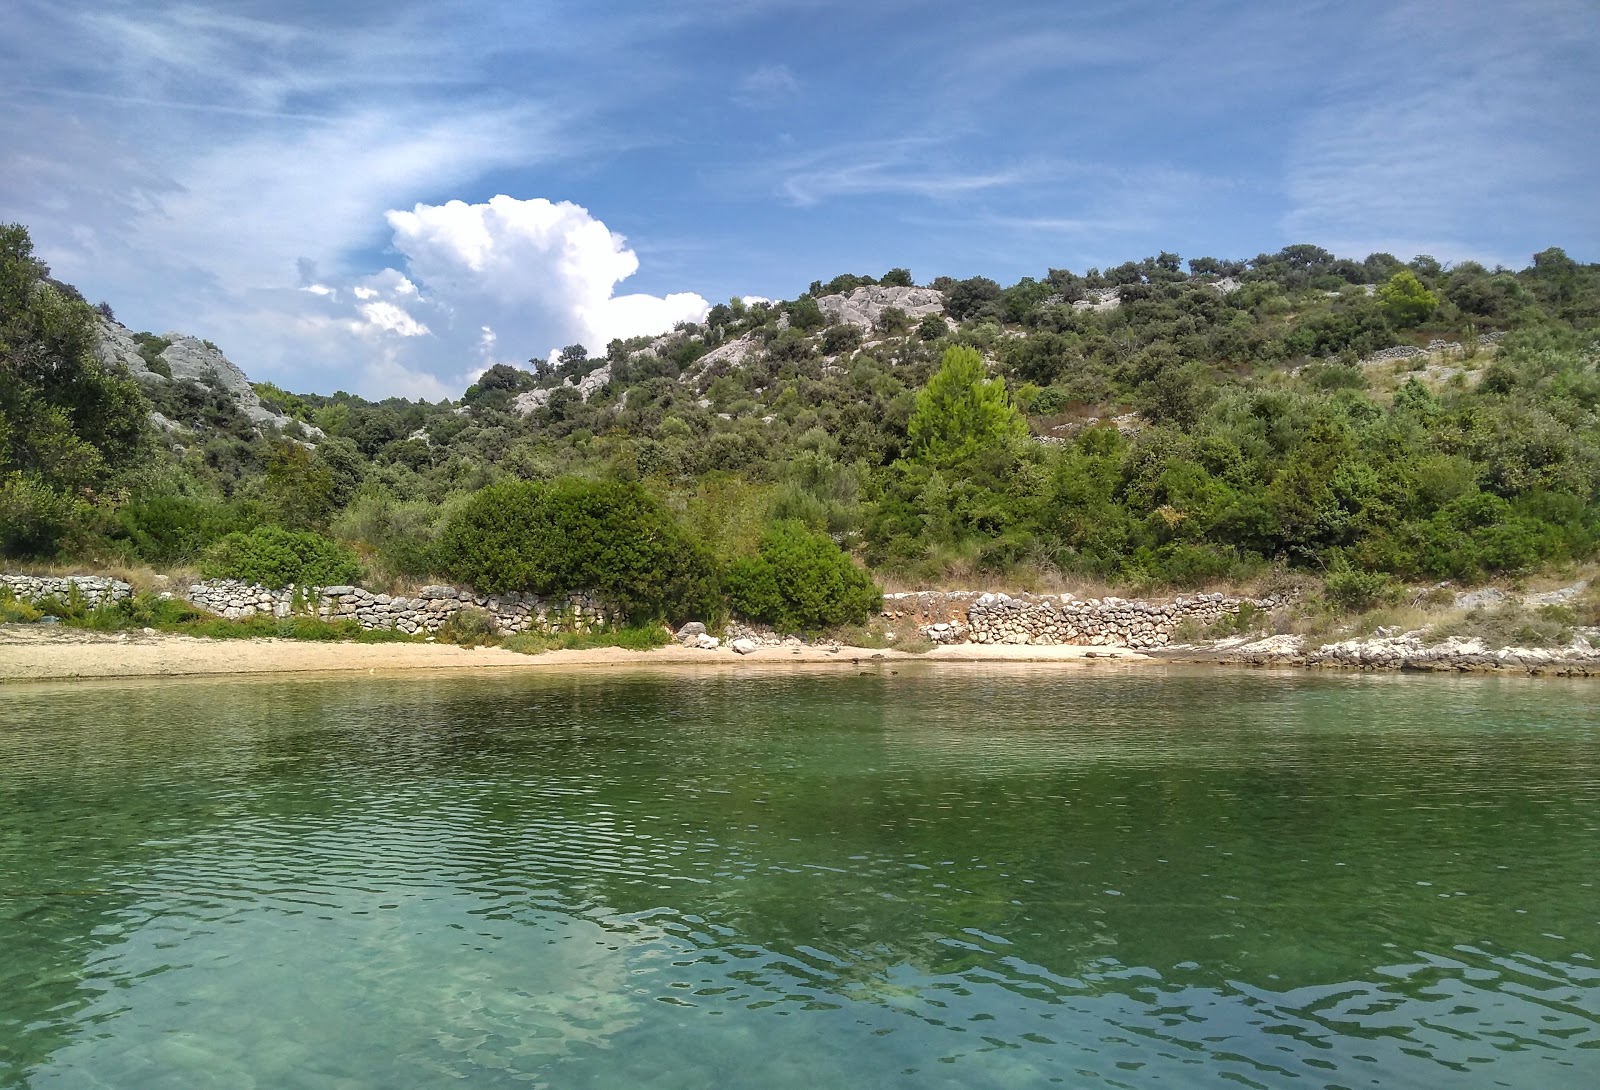 Uvala Sicenica'in fotoğrafı hafif ince çakıl taş yüzey ile